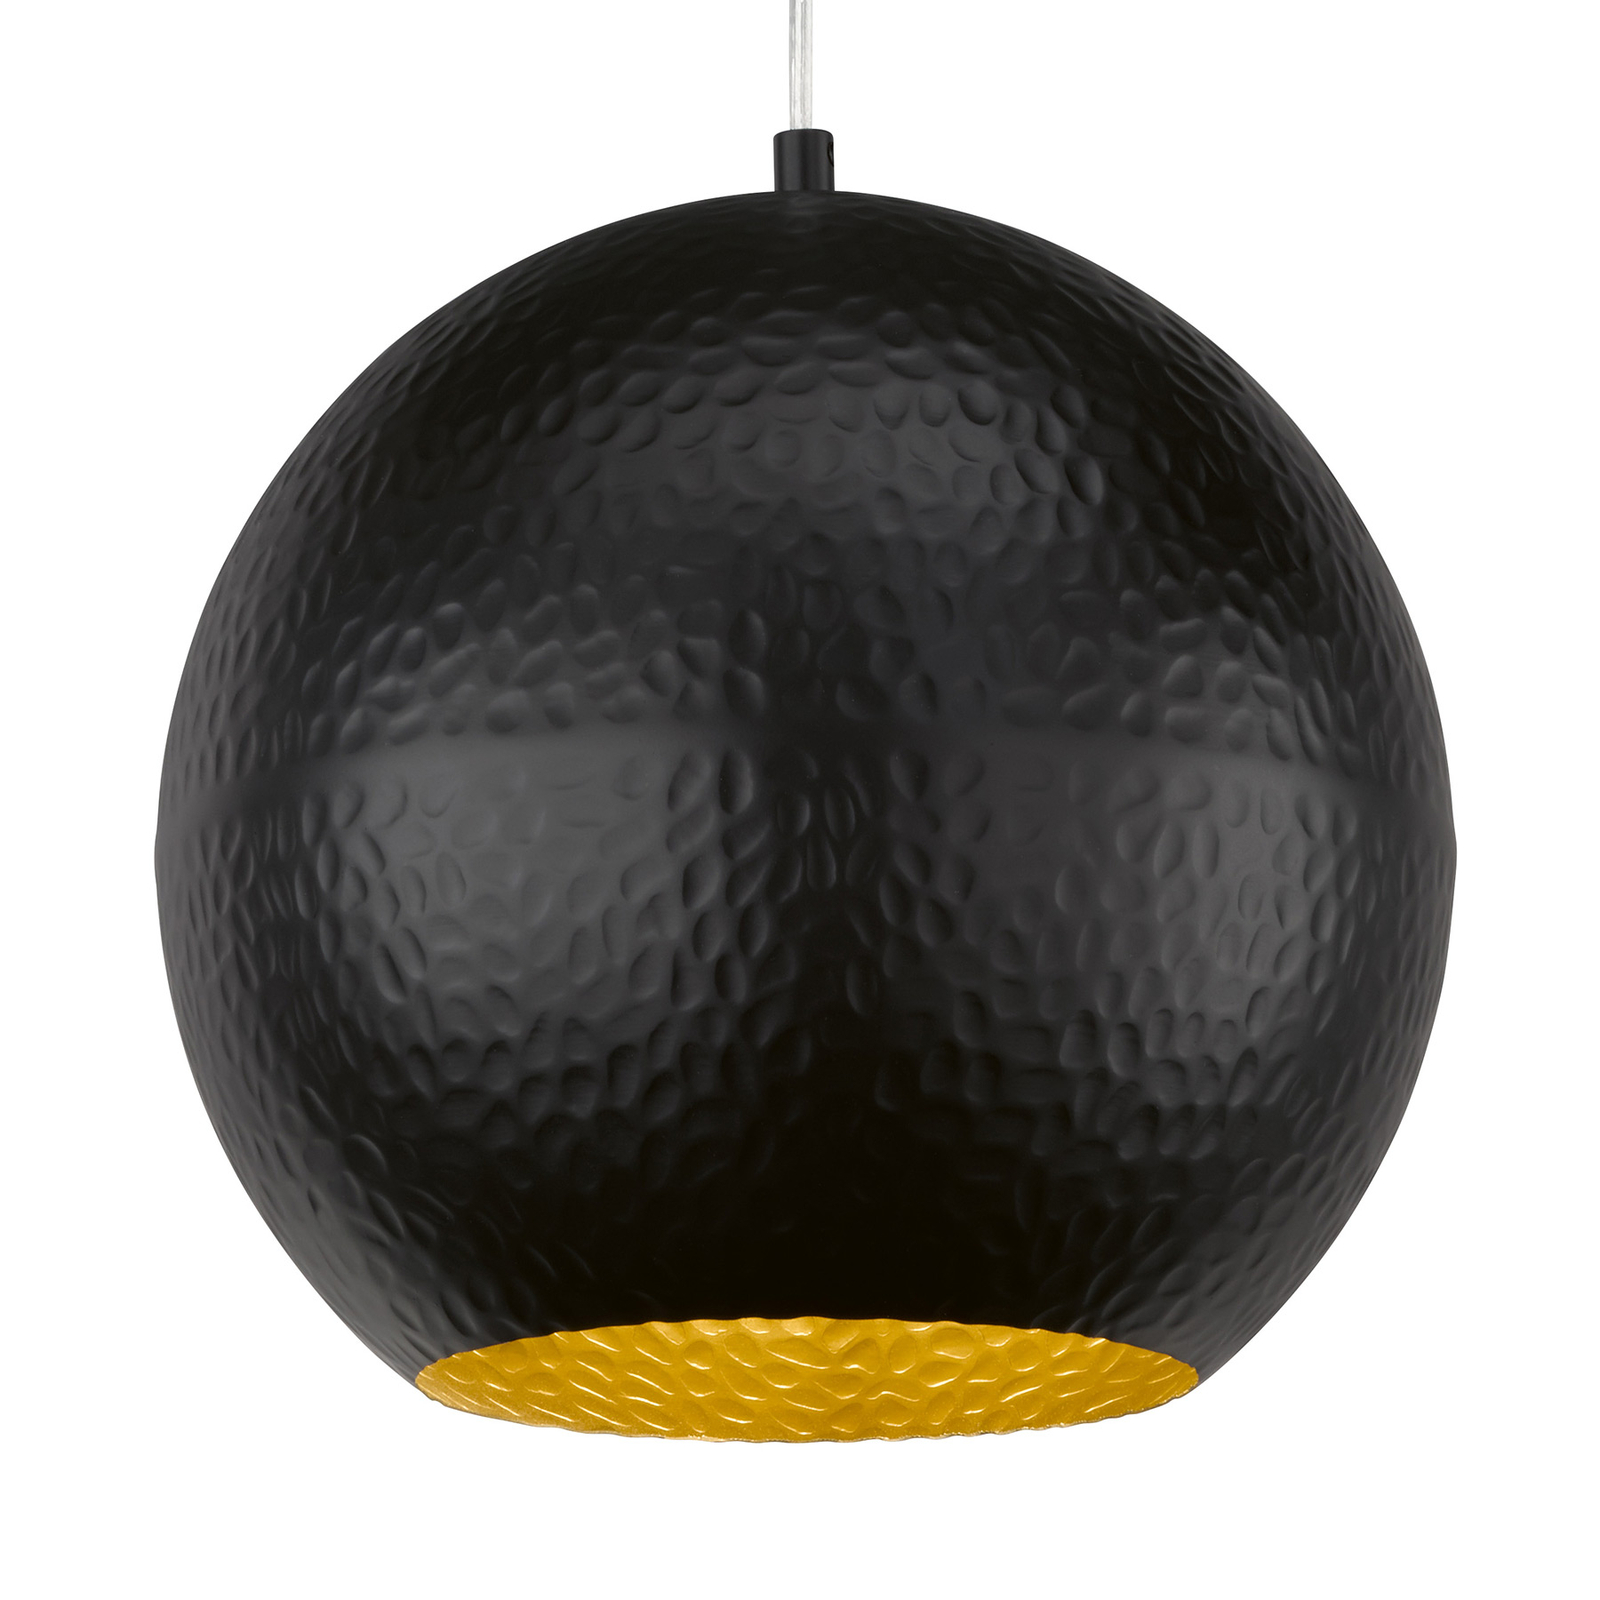 Mylon hanging light, black/gold, spherical